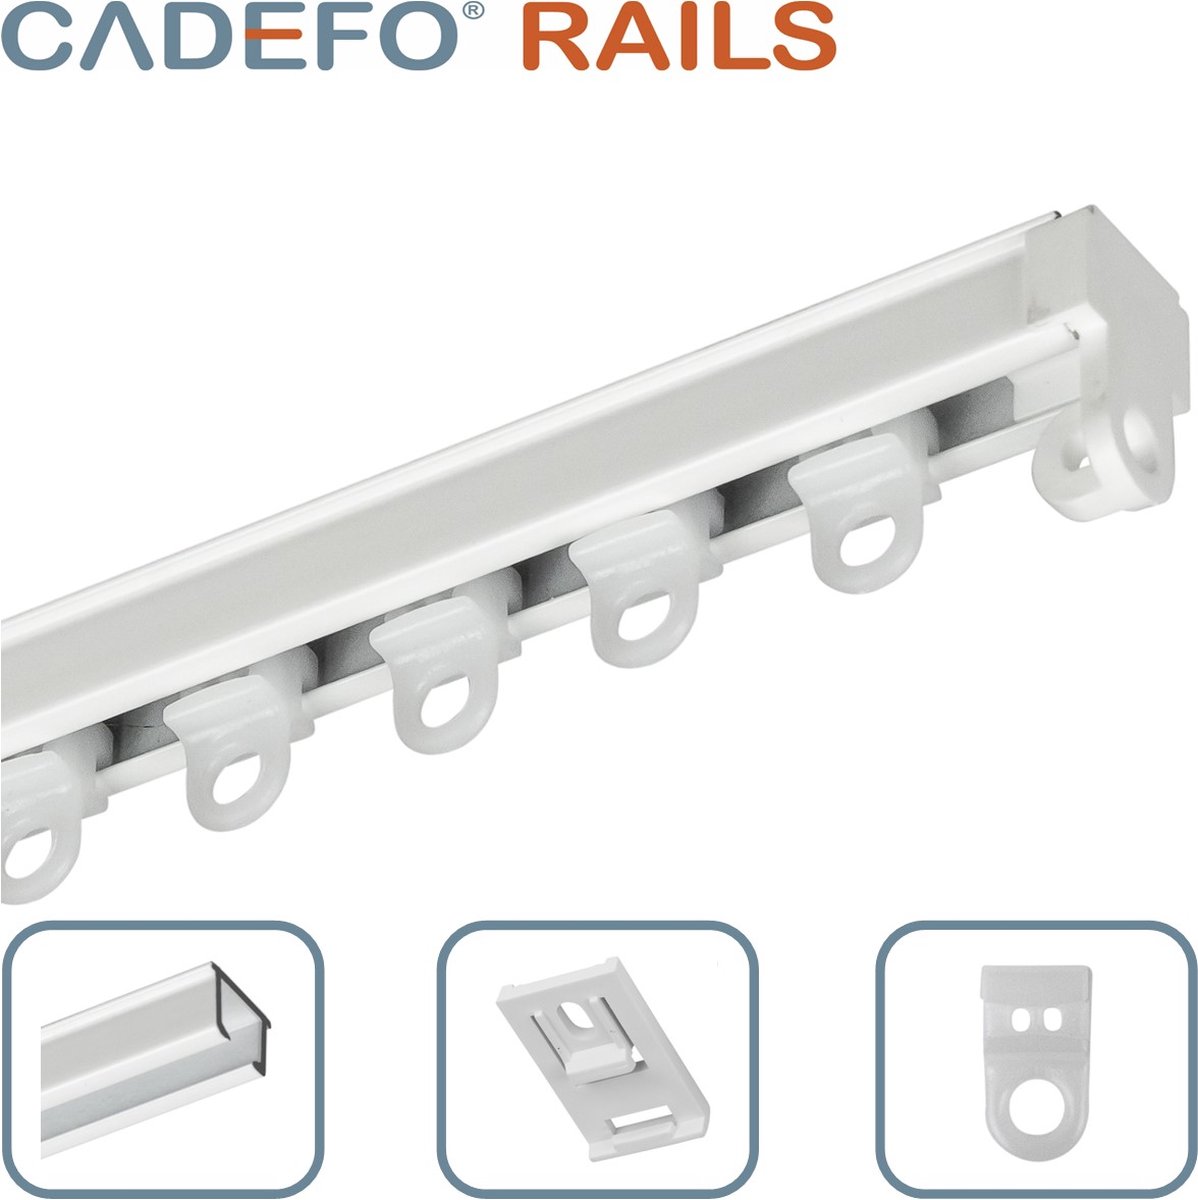 CADEFO RAILS (501 - 550 cm) Gordijnrails - Compleet op maat! - UIT 1 STUK - Leverbaar tot 6 meter - Plafondbevestiging - Lengte 549 cm